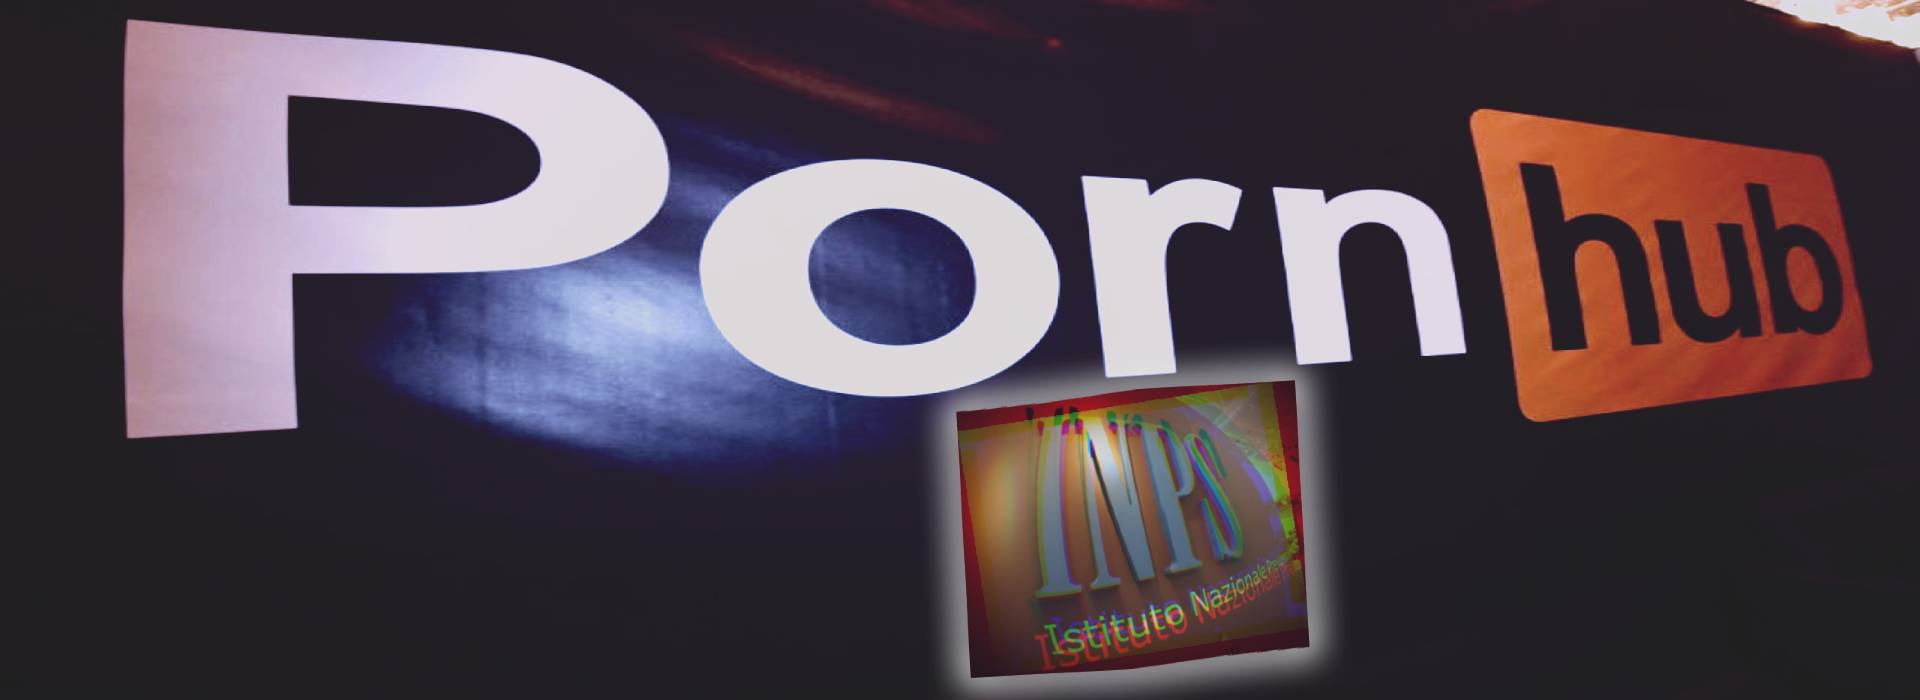 Pornhub corre in soccorso all'Inps: "Pronti ad aiutarvi per le prestazioni"